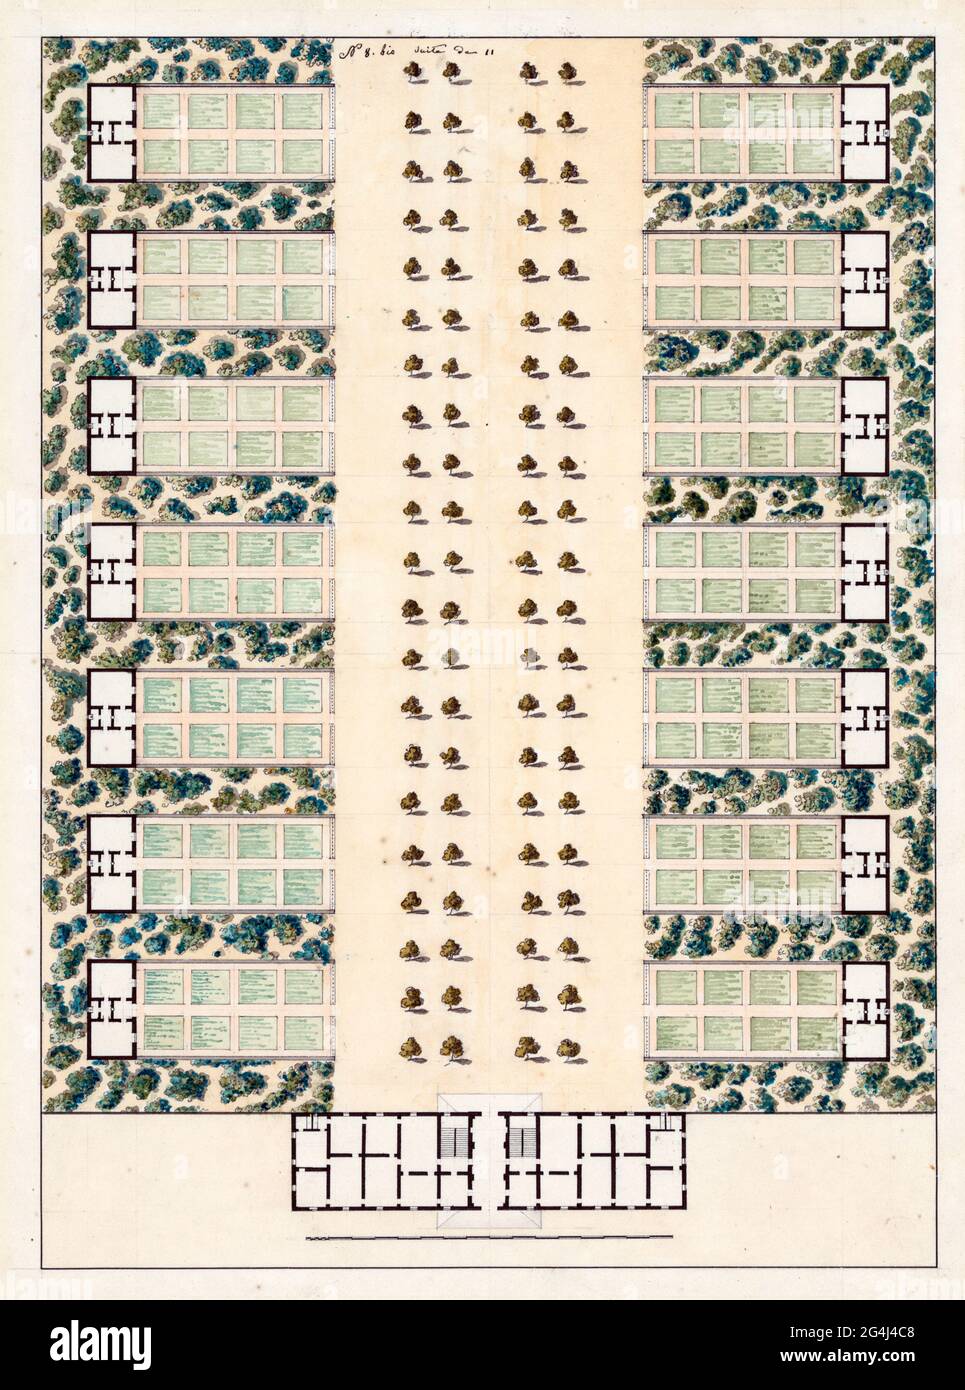 Jagdschloss mit Pavillons. Lageplan - Aquarelldarstellung, die der Schule von Turin zugeschrieben wird, zeigt den Lageplan für ein Jagdschloss oder eine Burg mit 14 Pavillons, die jeweils einen ummauerten Garten haben, um 1700 Stockfoto